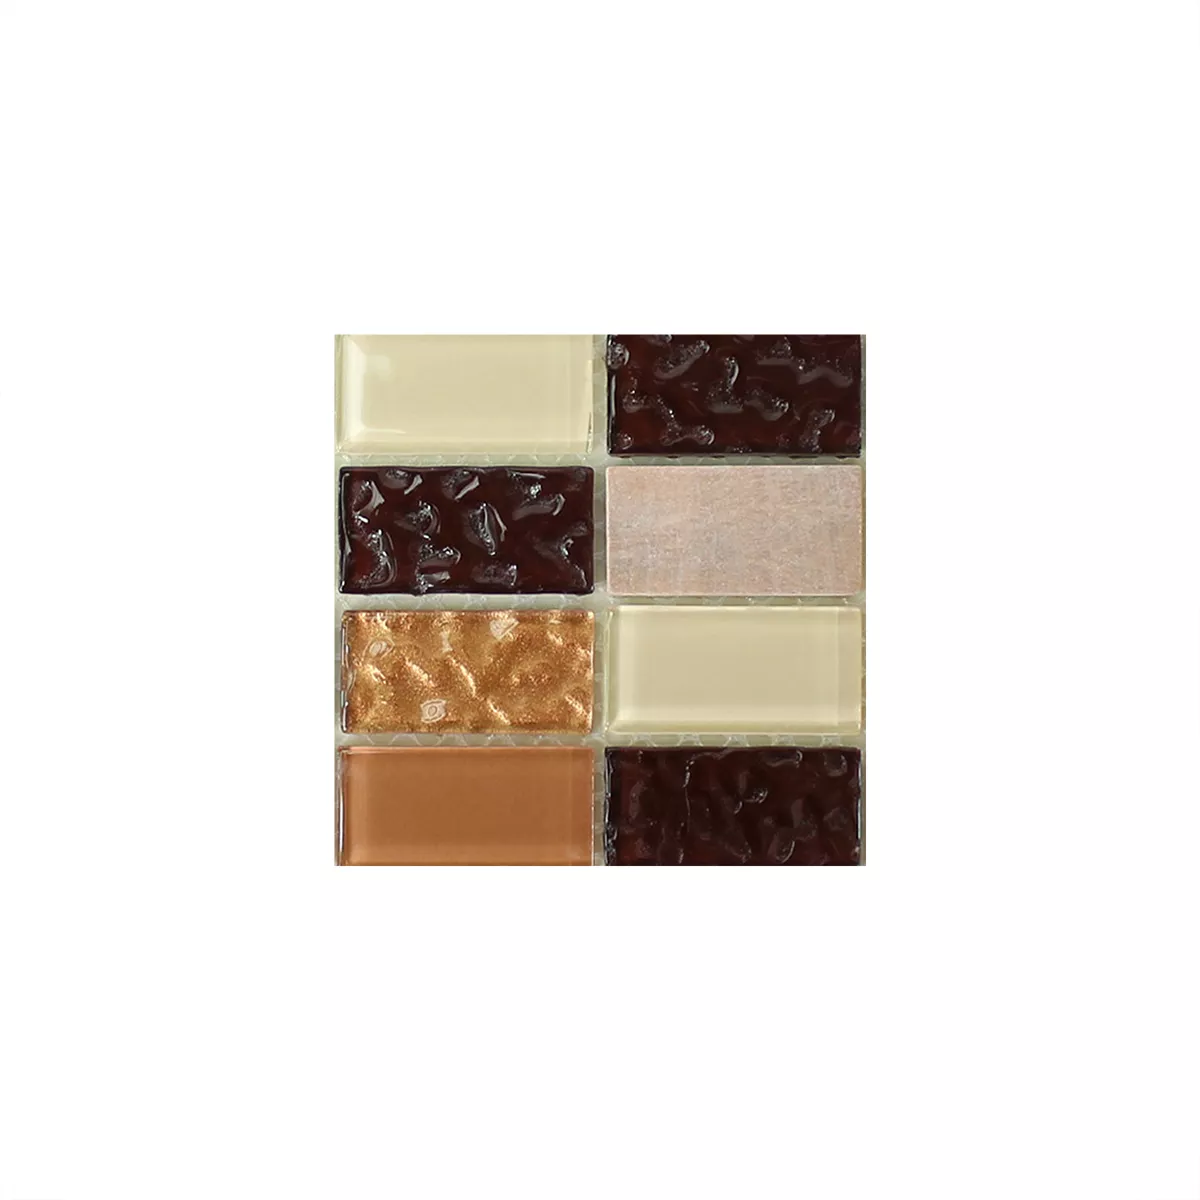 Muster von Selbstklebende Mosaikfliesen Naturstein Glas Beige Braun Brick